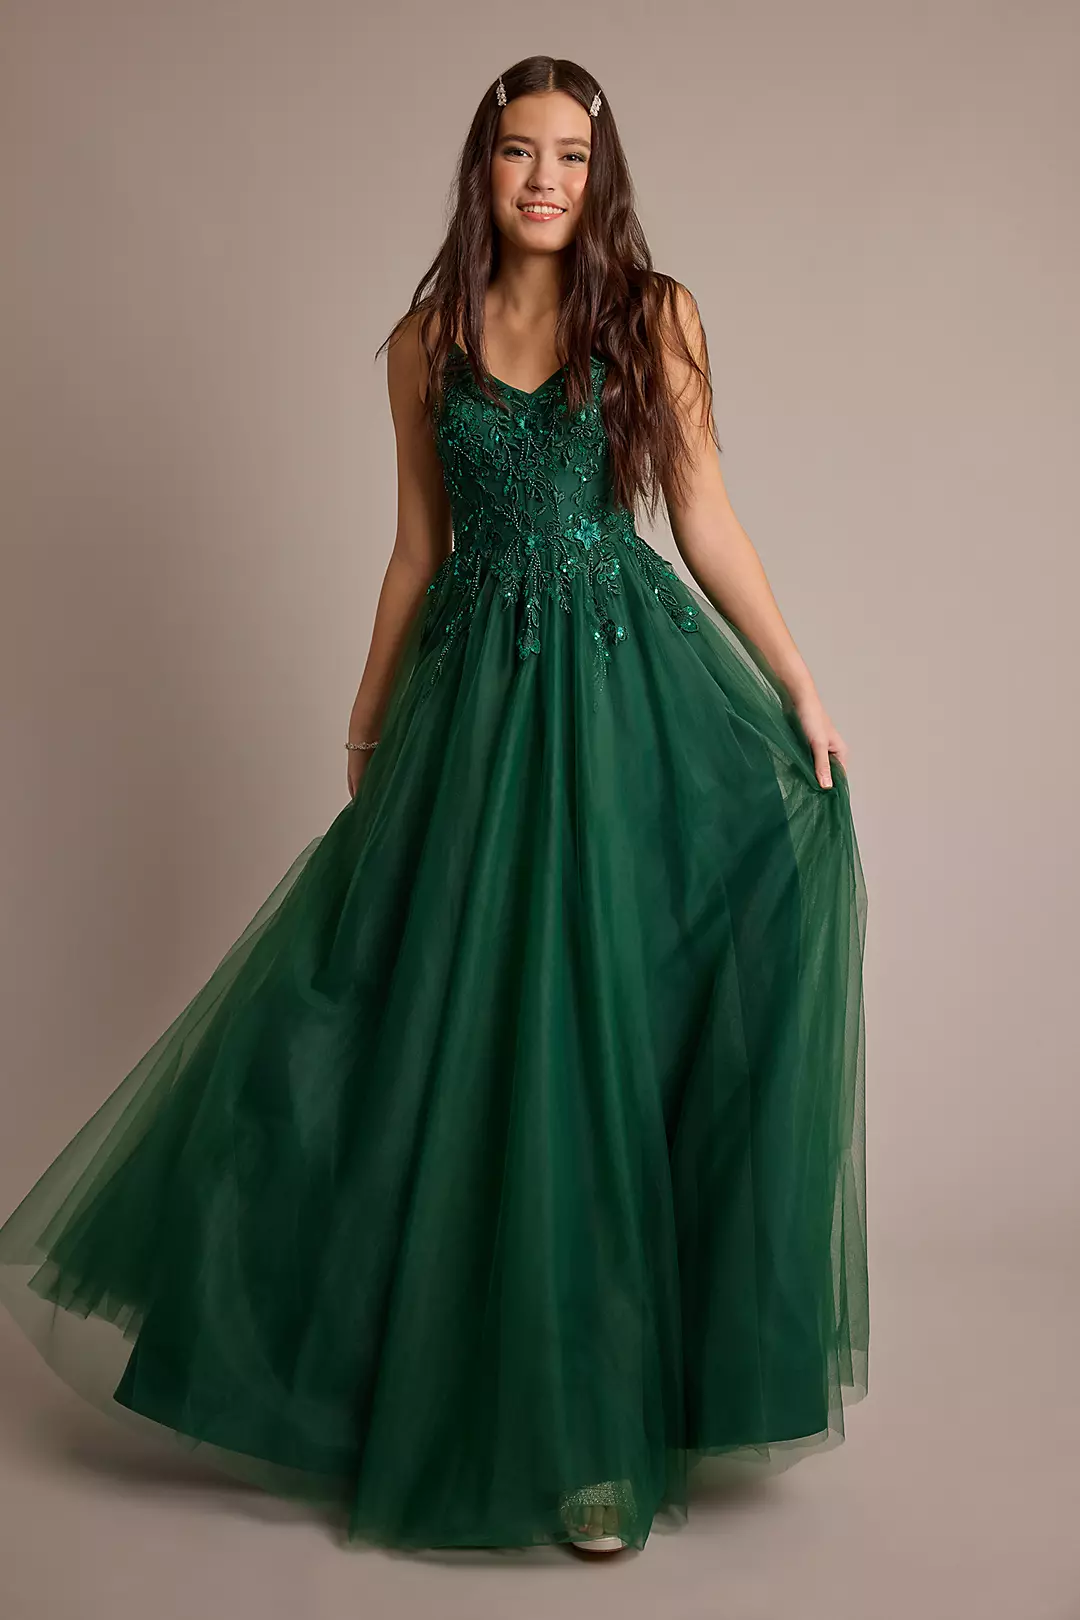 Girl's Emerald Green Beaded Dress, Flower Girl Dress